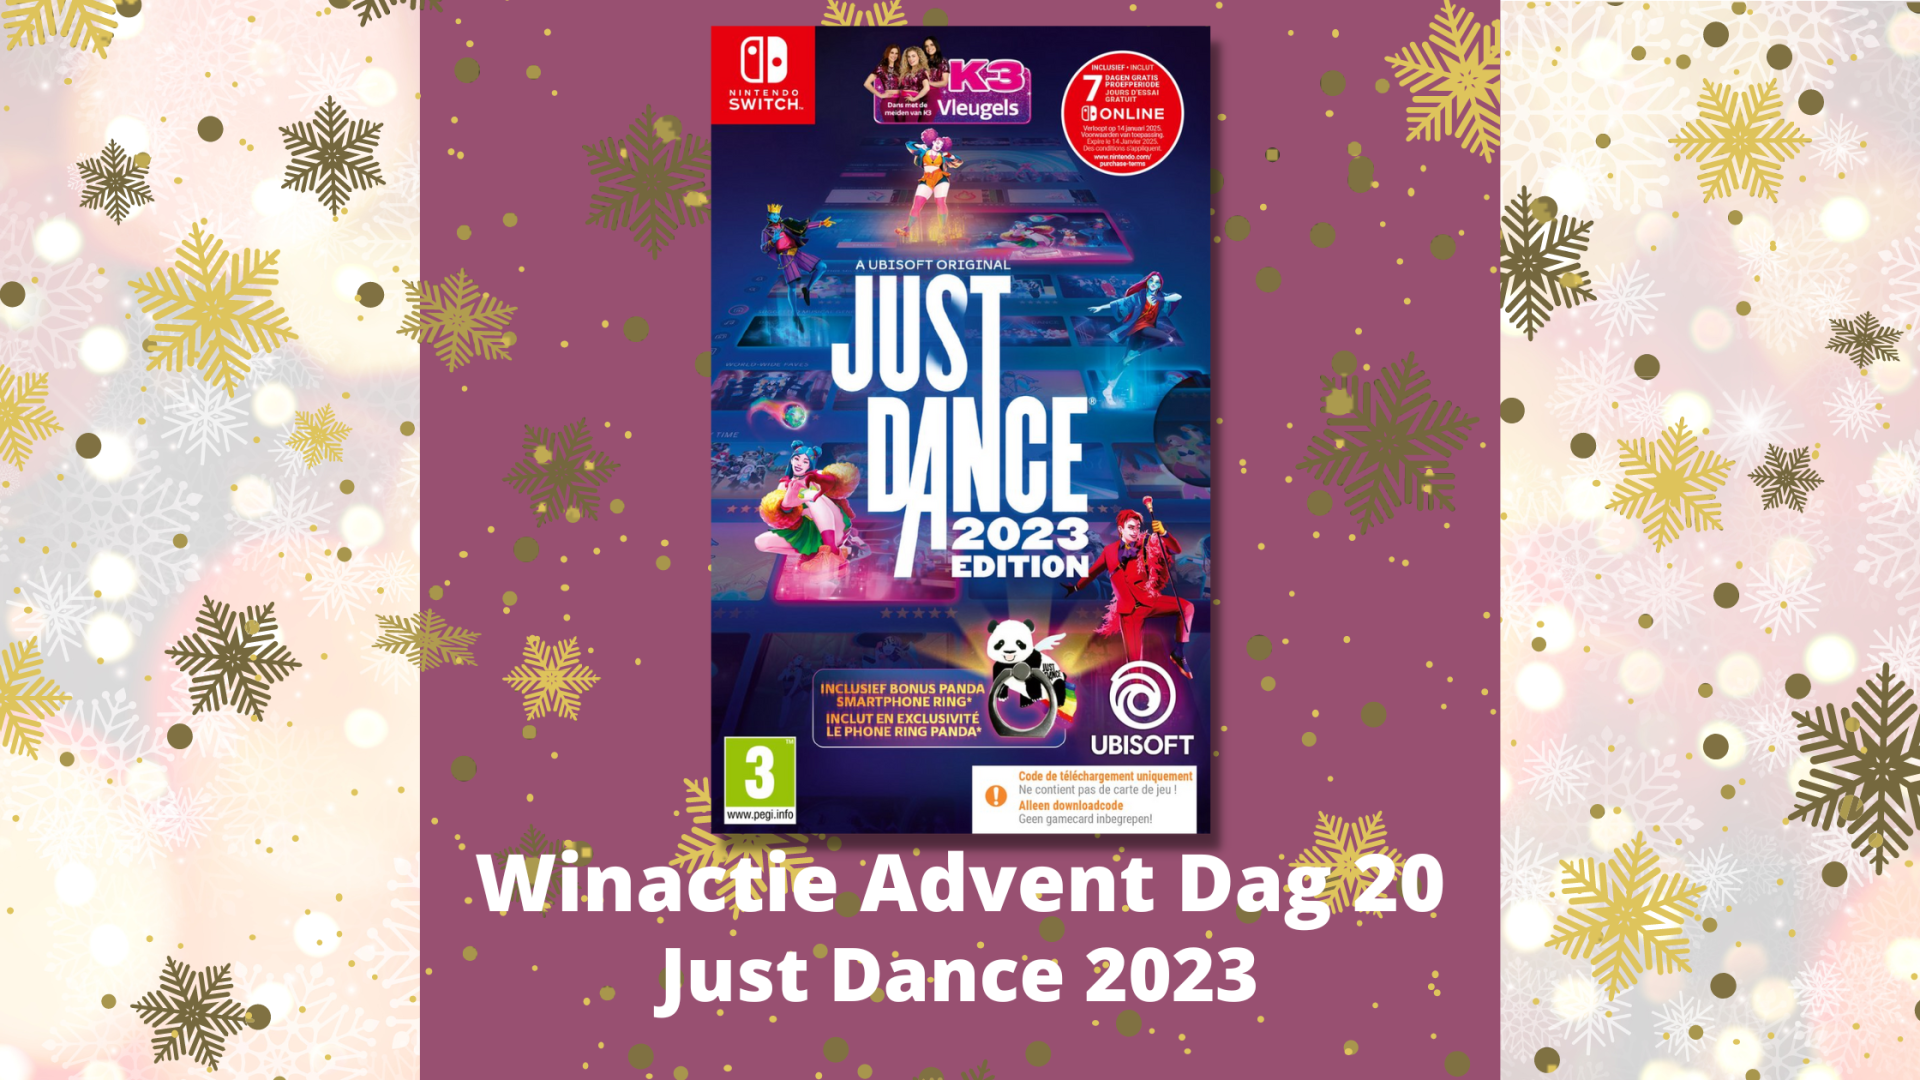 Winactie Advent Dag 20 Just Dance 2023